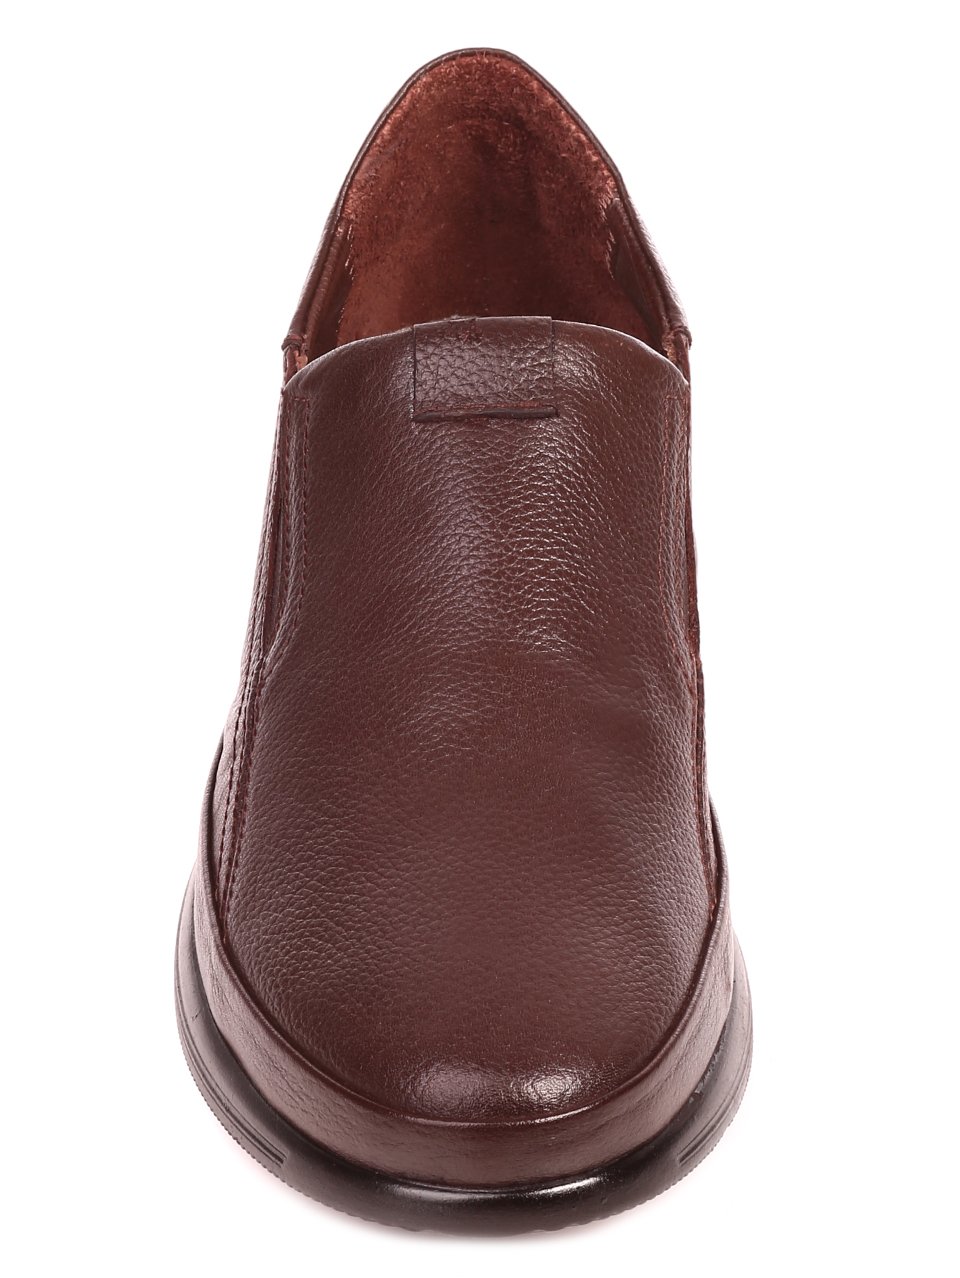 Ежедневни мъжки обувки от естествена кожа 7AT-21879 brown